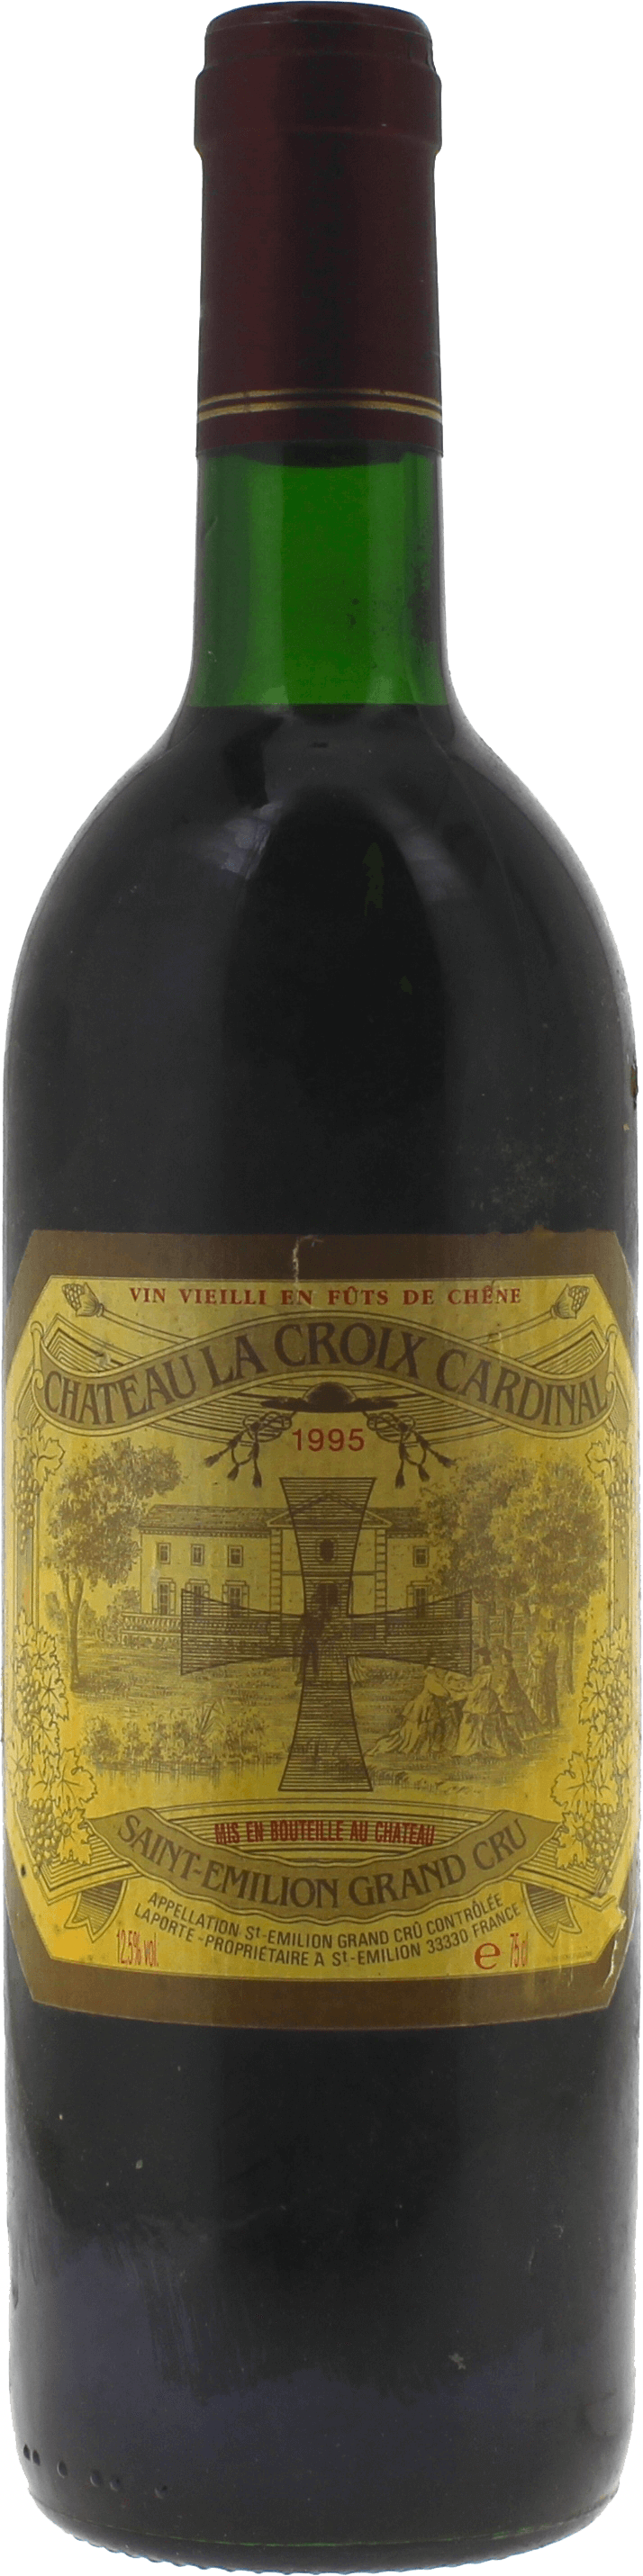 Croix cardinal 1995  Saint-Emilion, Bordeaux rouge